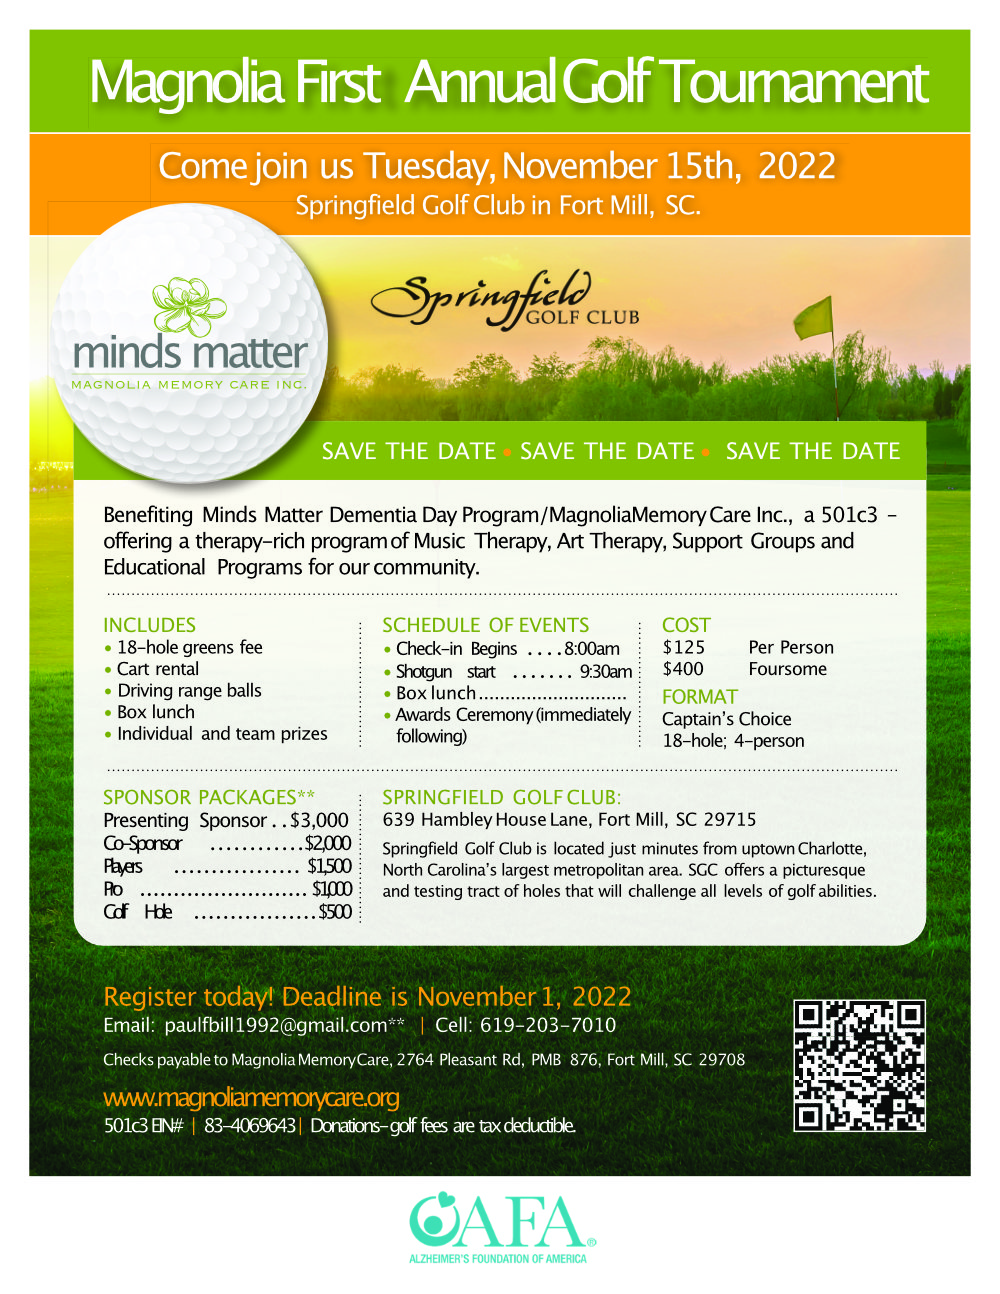 Minds Matter Golf Event